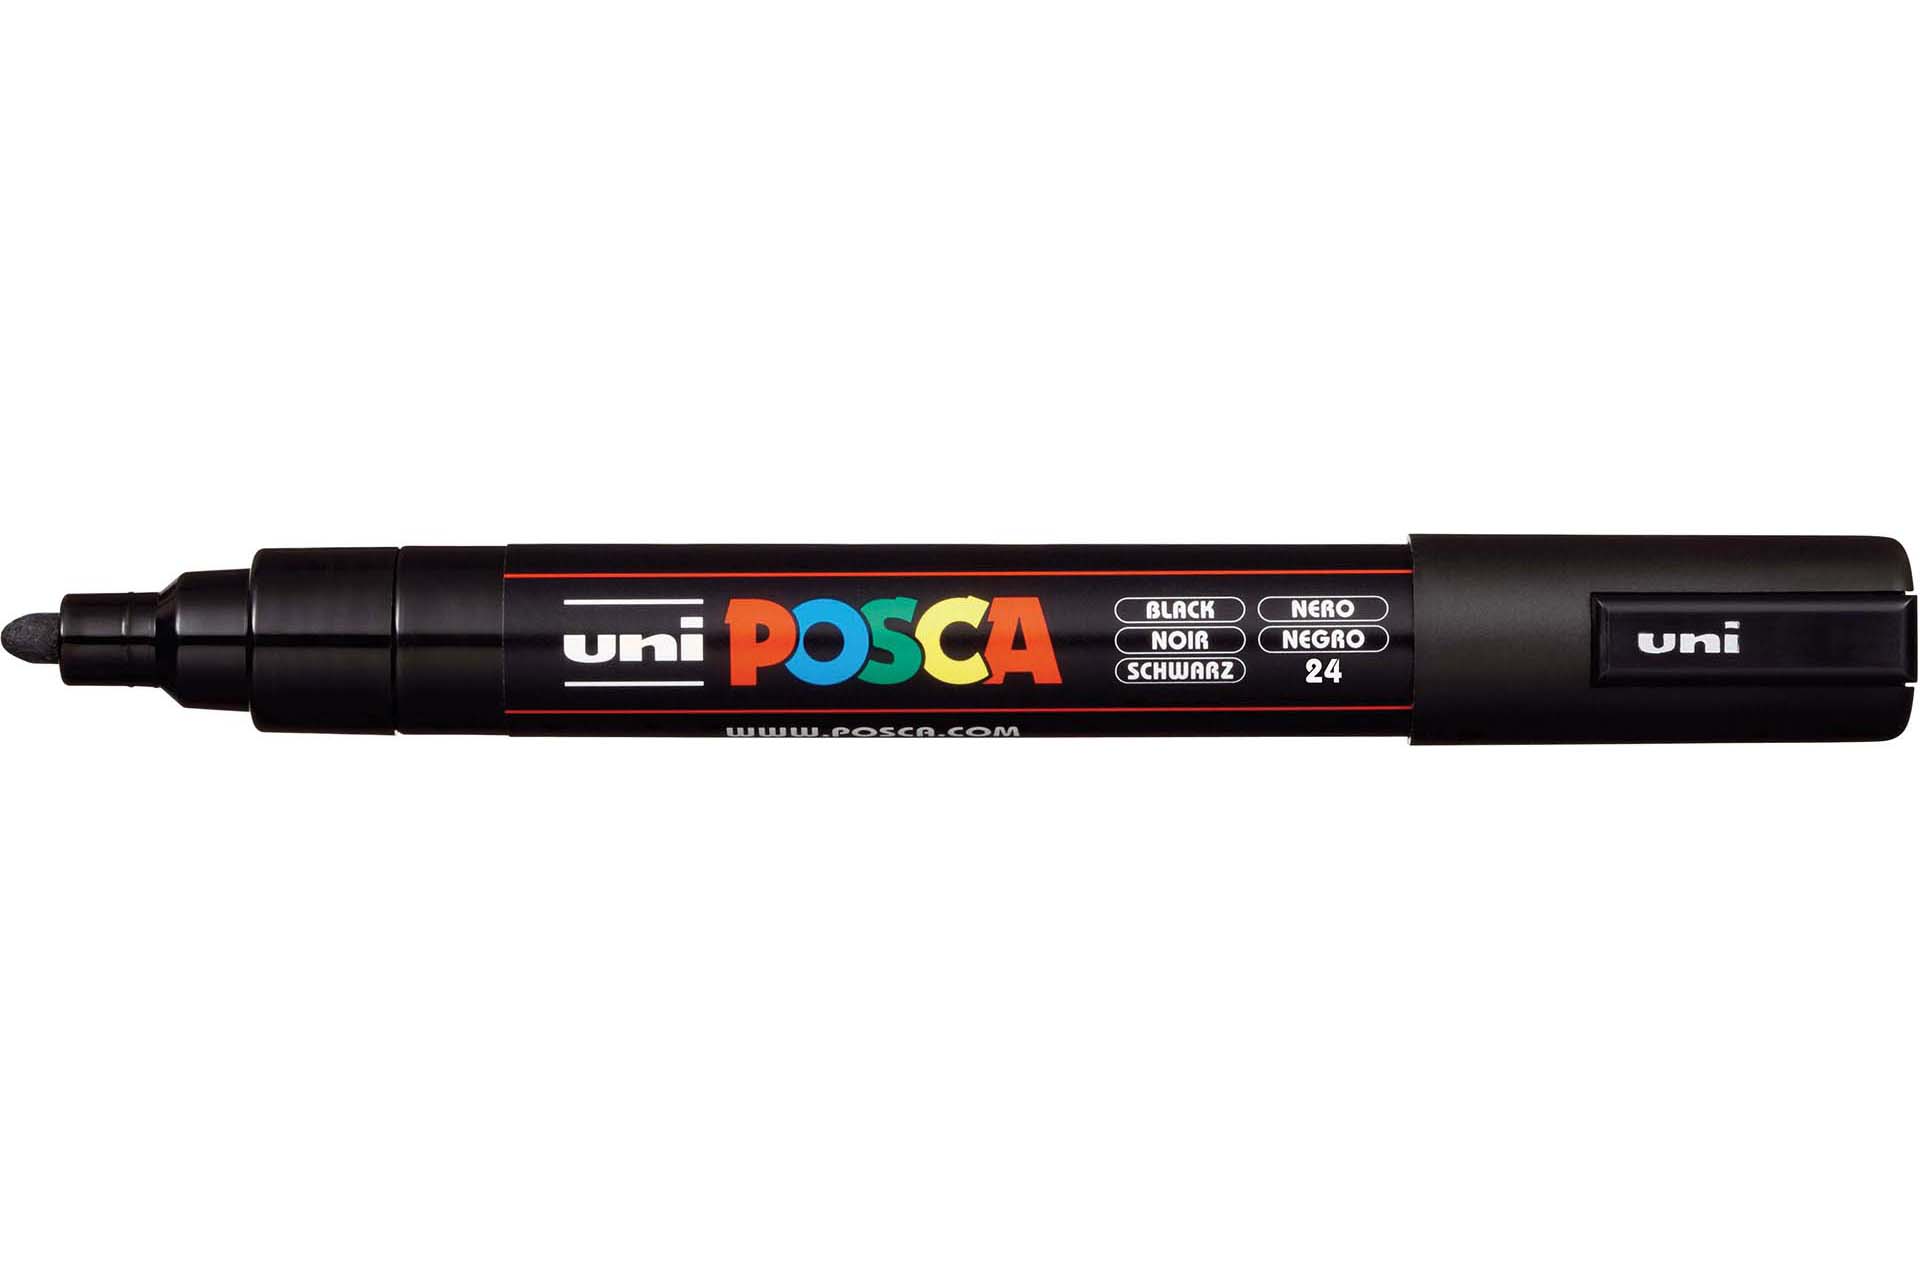 Uni Posca Marker Medium Bullet Tip PC-5M Black